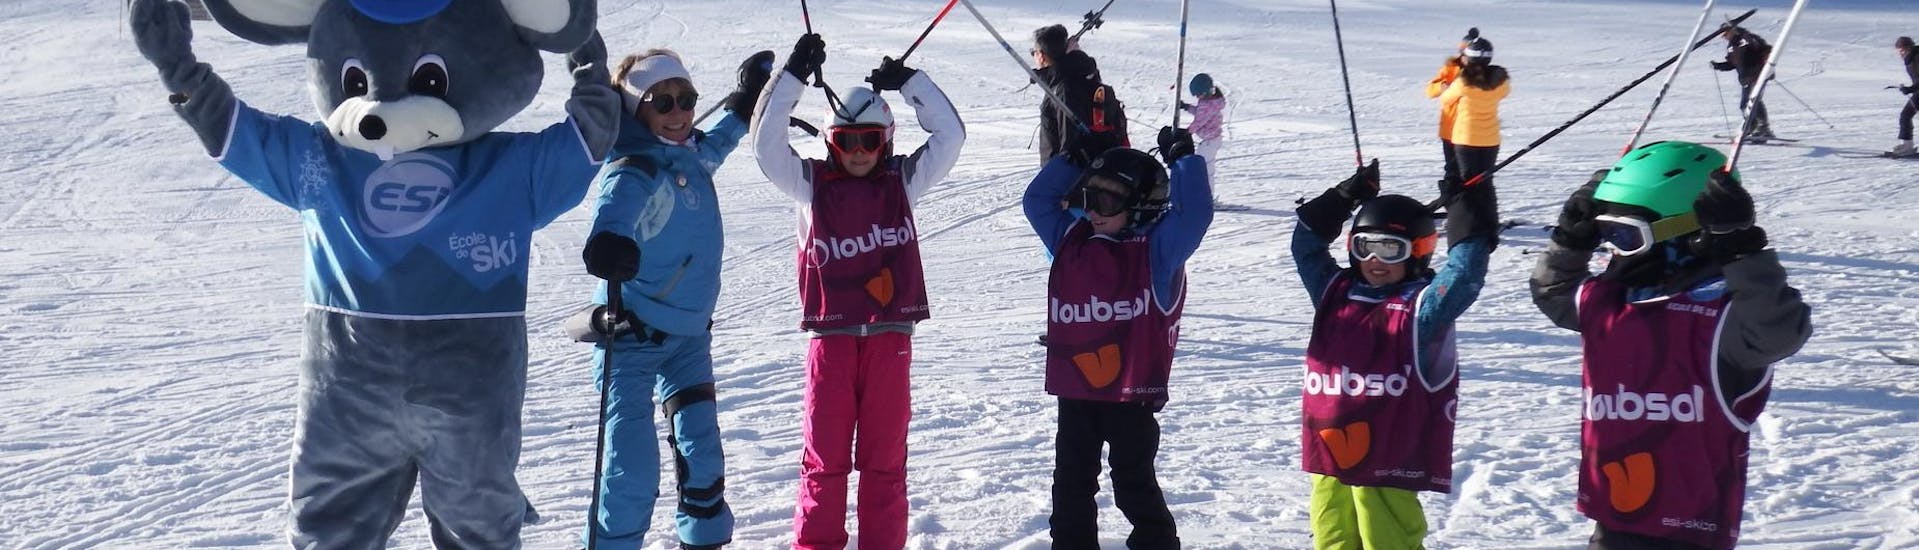 Clases de esquí para niños a partir de 5 años.